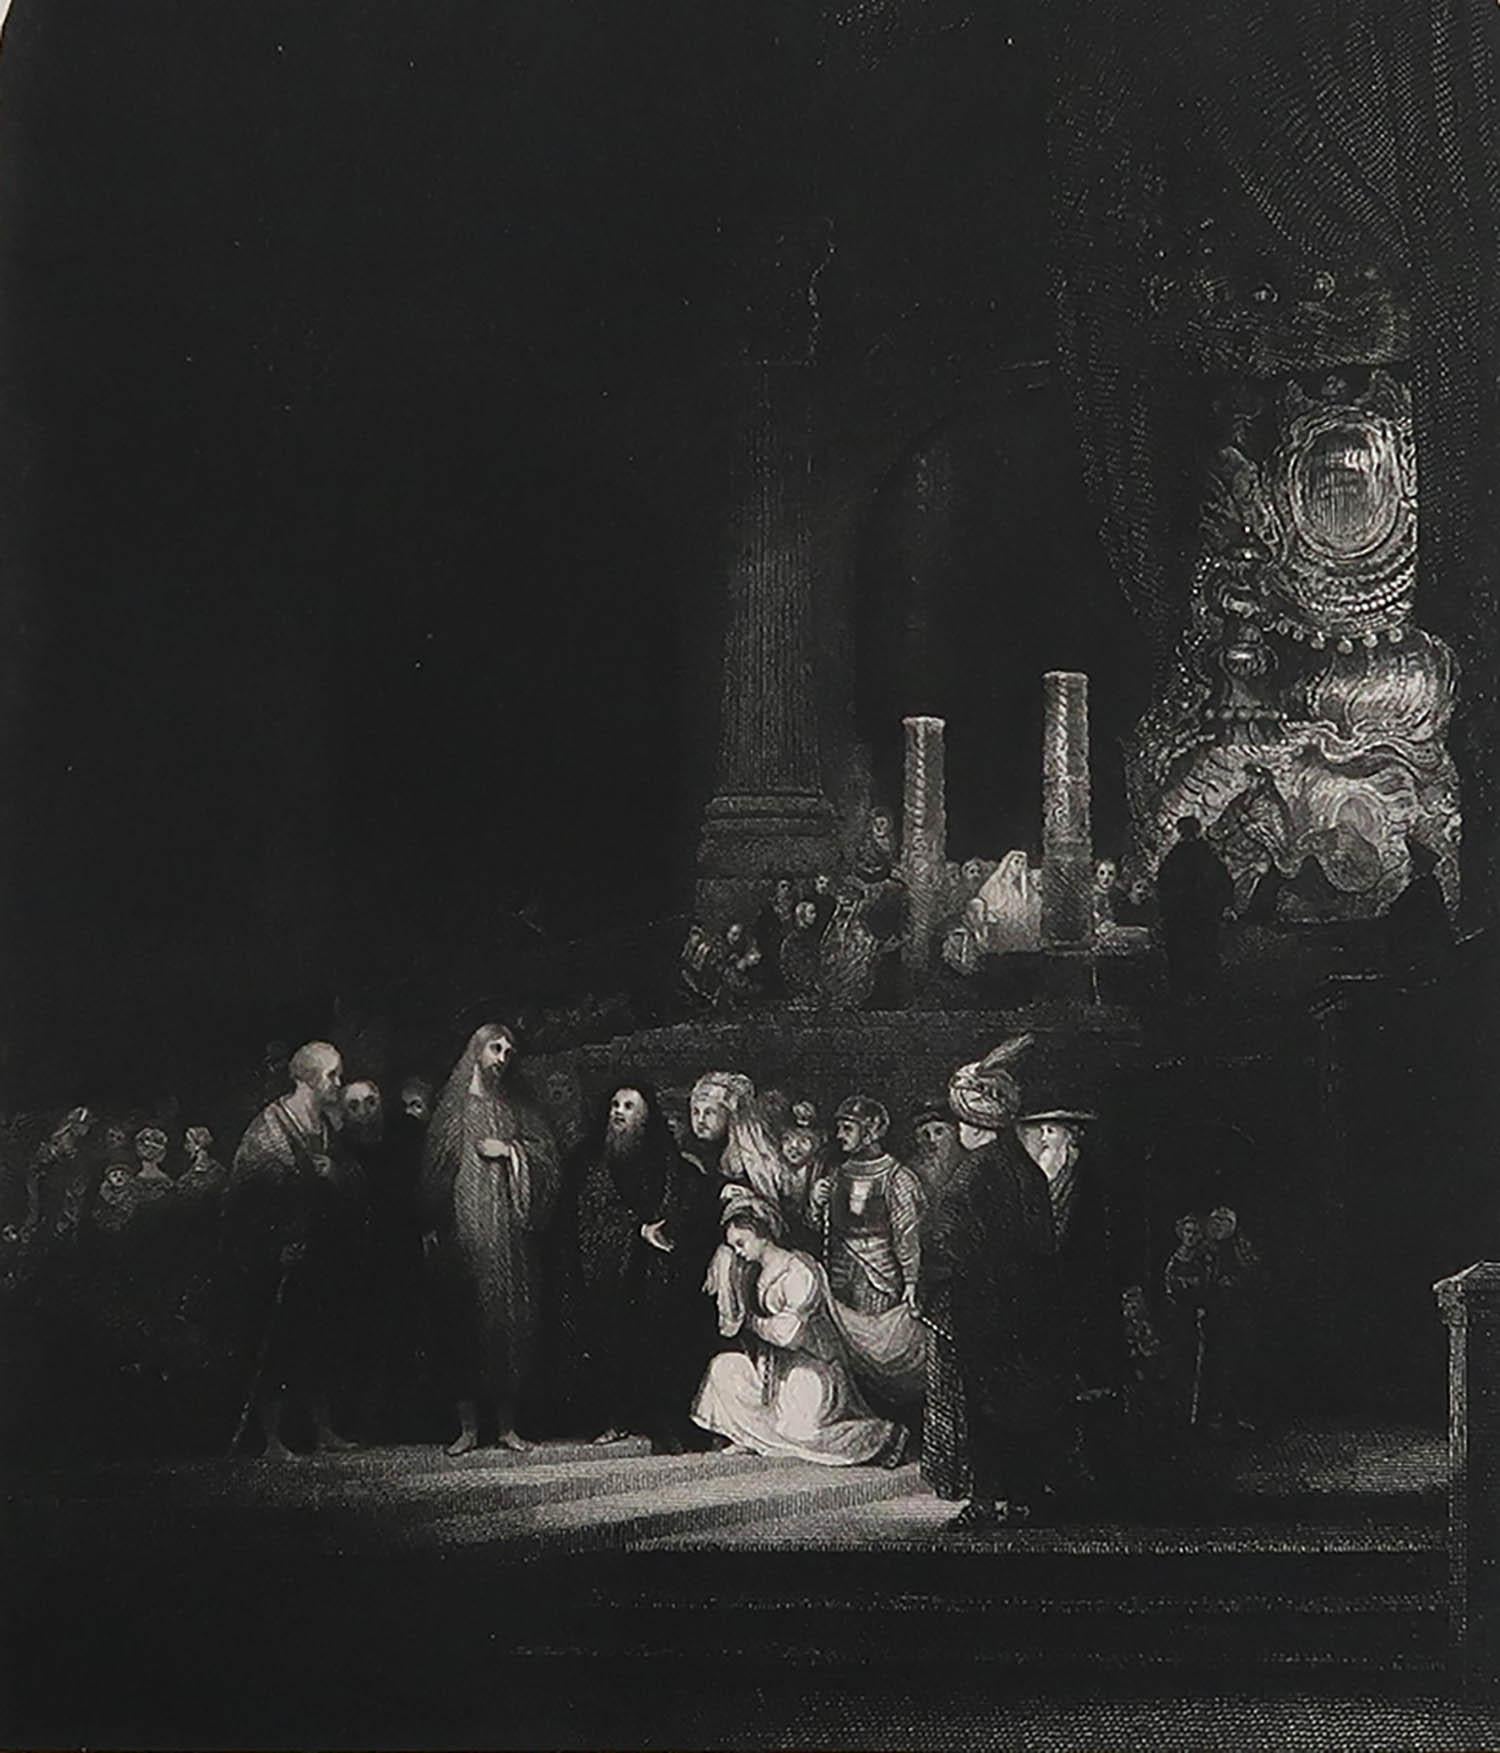 Wunderschönes Bild nach Rembrandt

Feiner Stahlstich. 

Herausgegeben von Jones & Co. in London. C.1850

Ungerahmt.

